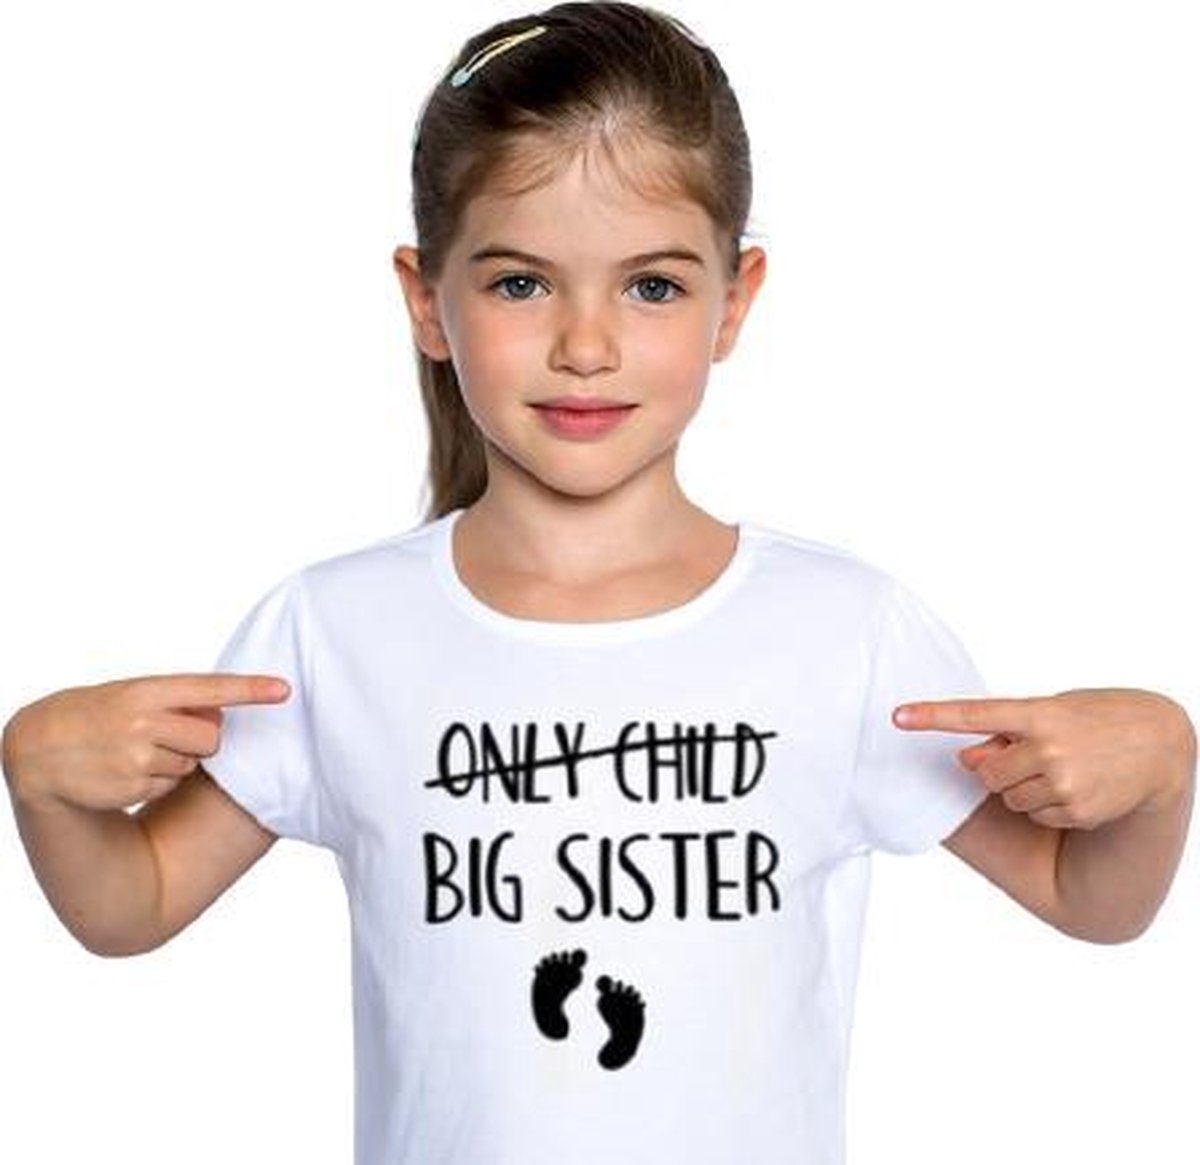 Only child BIG SISTER T-shirt | Grote zus shirt wit | Leeftijd ca. 2 tot 3 jaar